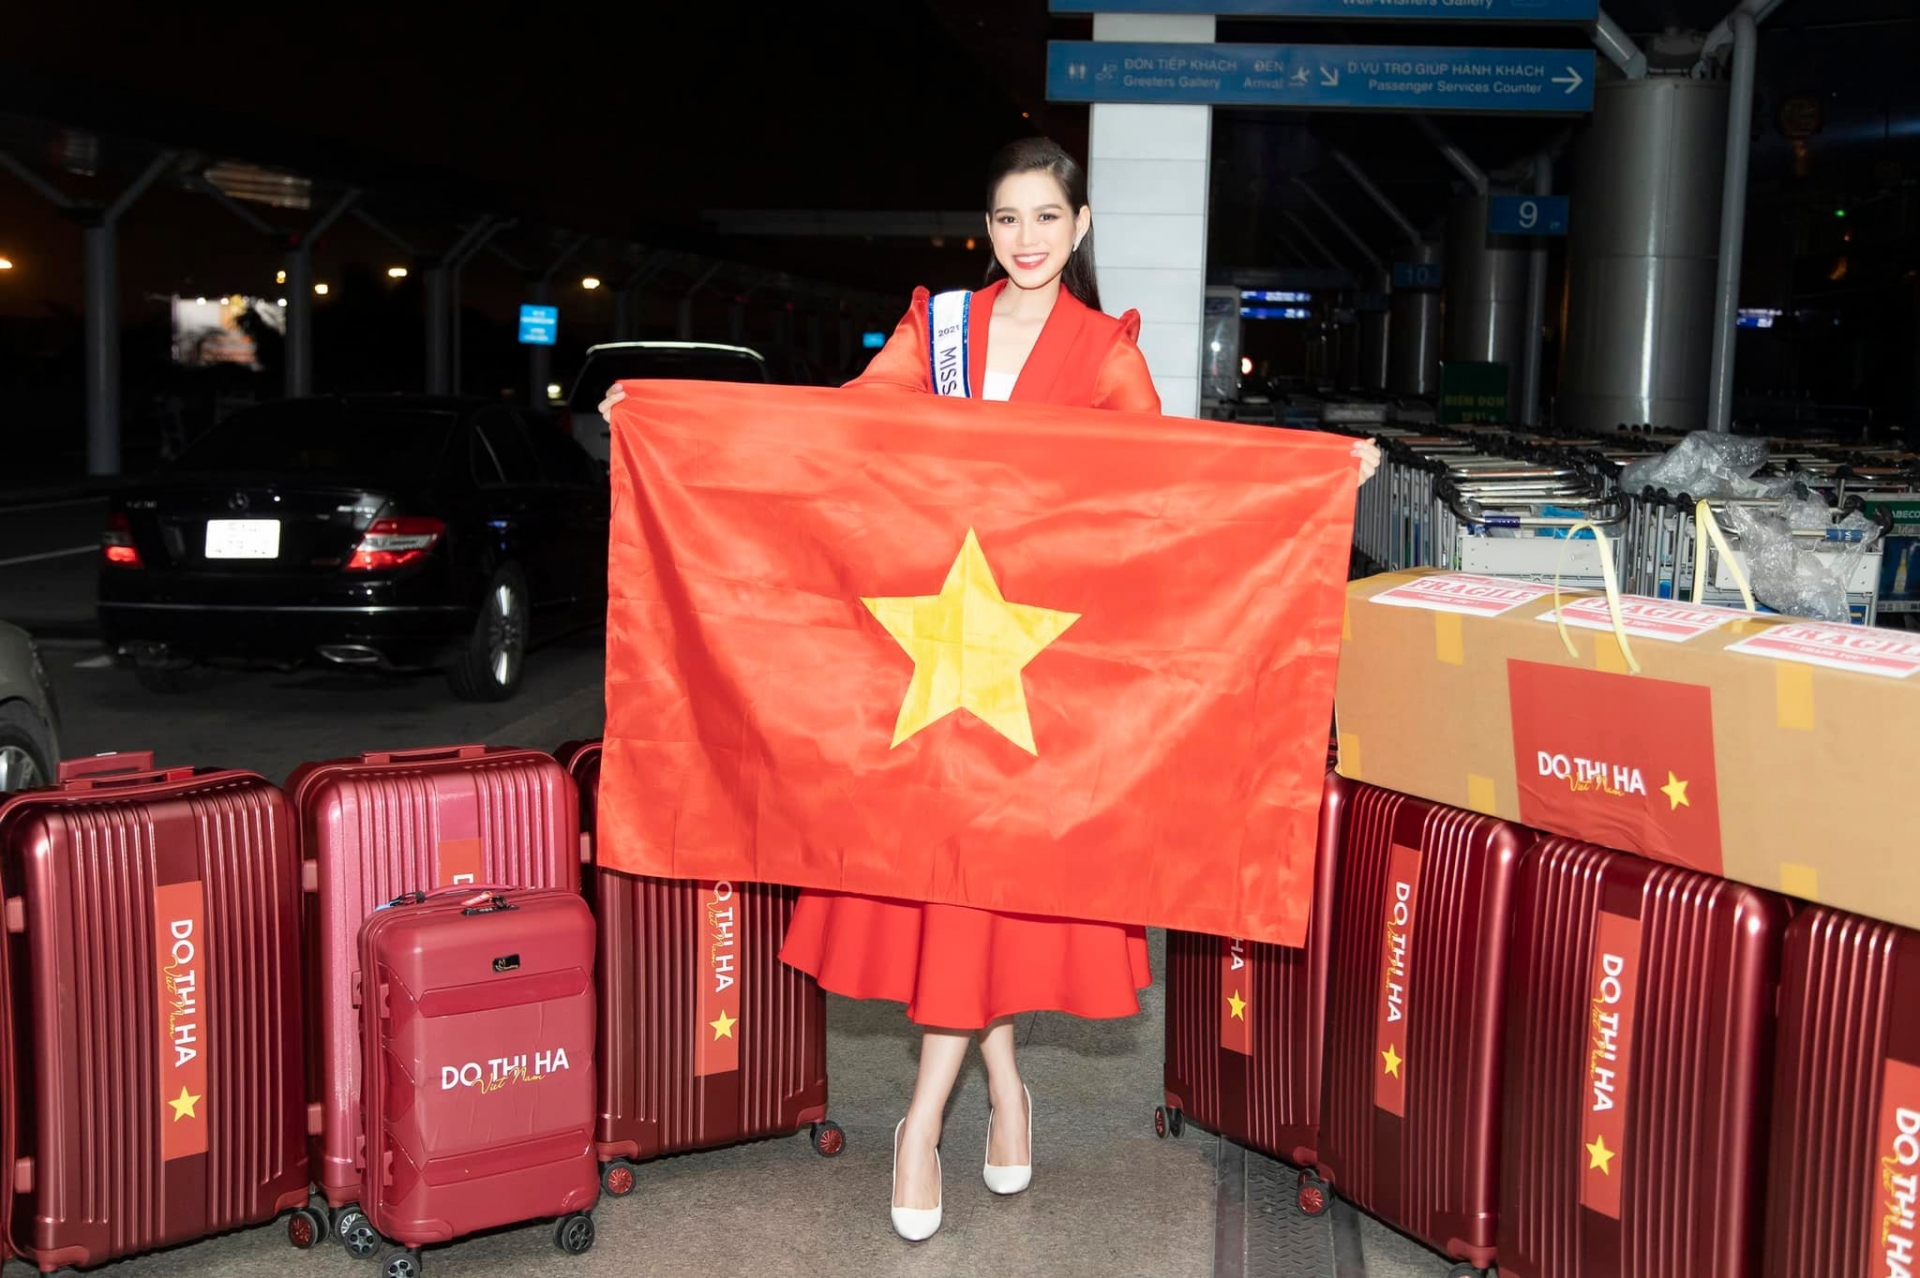 Đỗ Thị Hà gặp phải sự cố ngoài sức tưởng tượng, tiết lộ khắc nghiệt khi mới lên đường thi Miss World - Ảnh 1